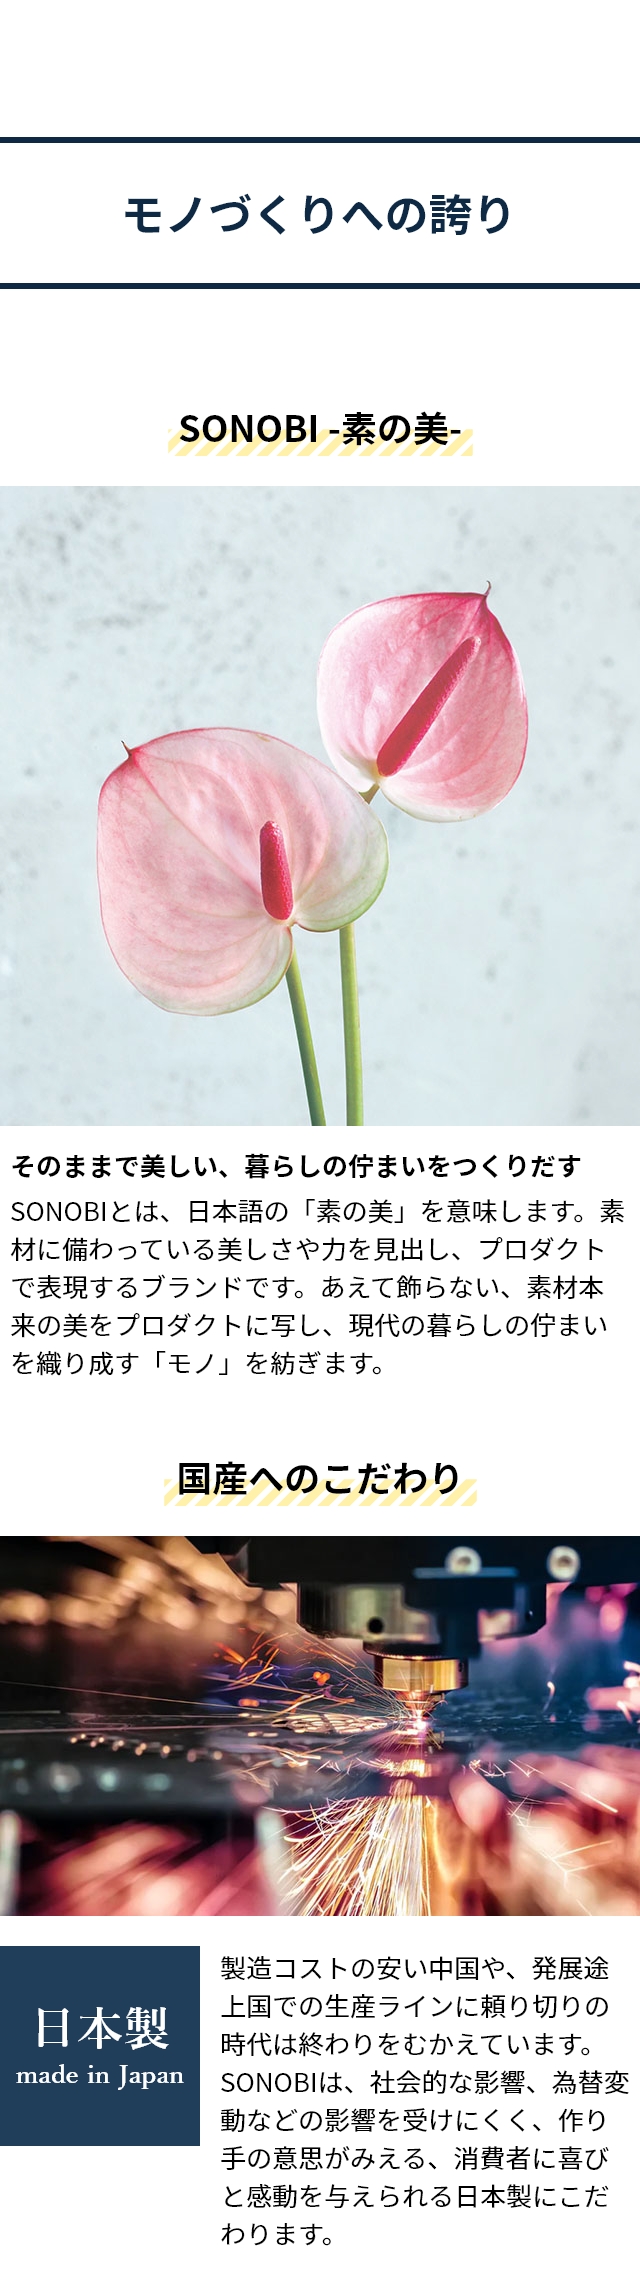 SONOBI(ソノビ) ダブルグラスヒーター(Double Glass Heater) DGH-01：モノづくりへの誇り